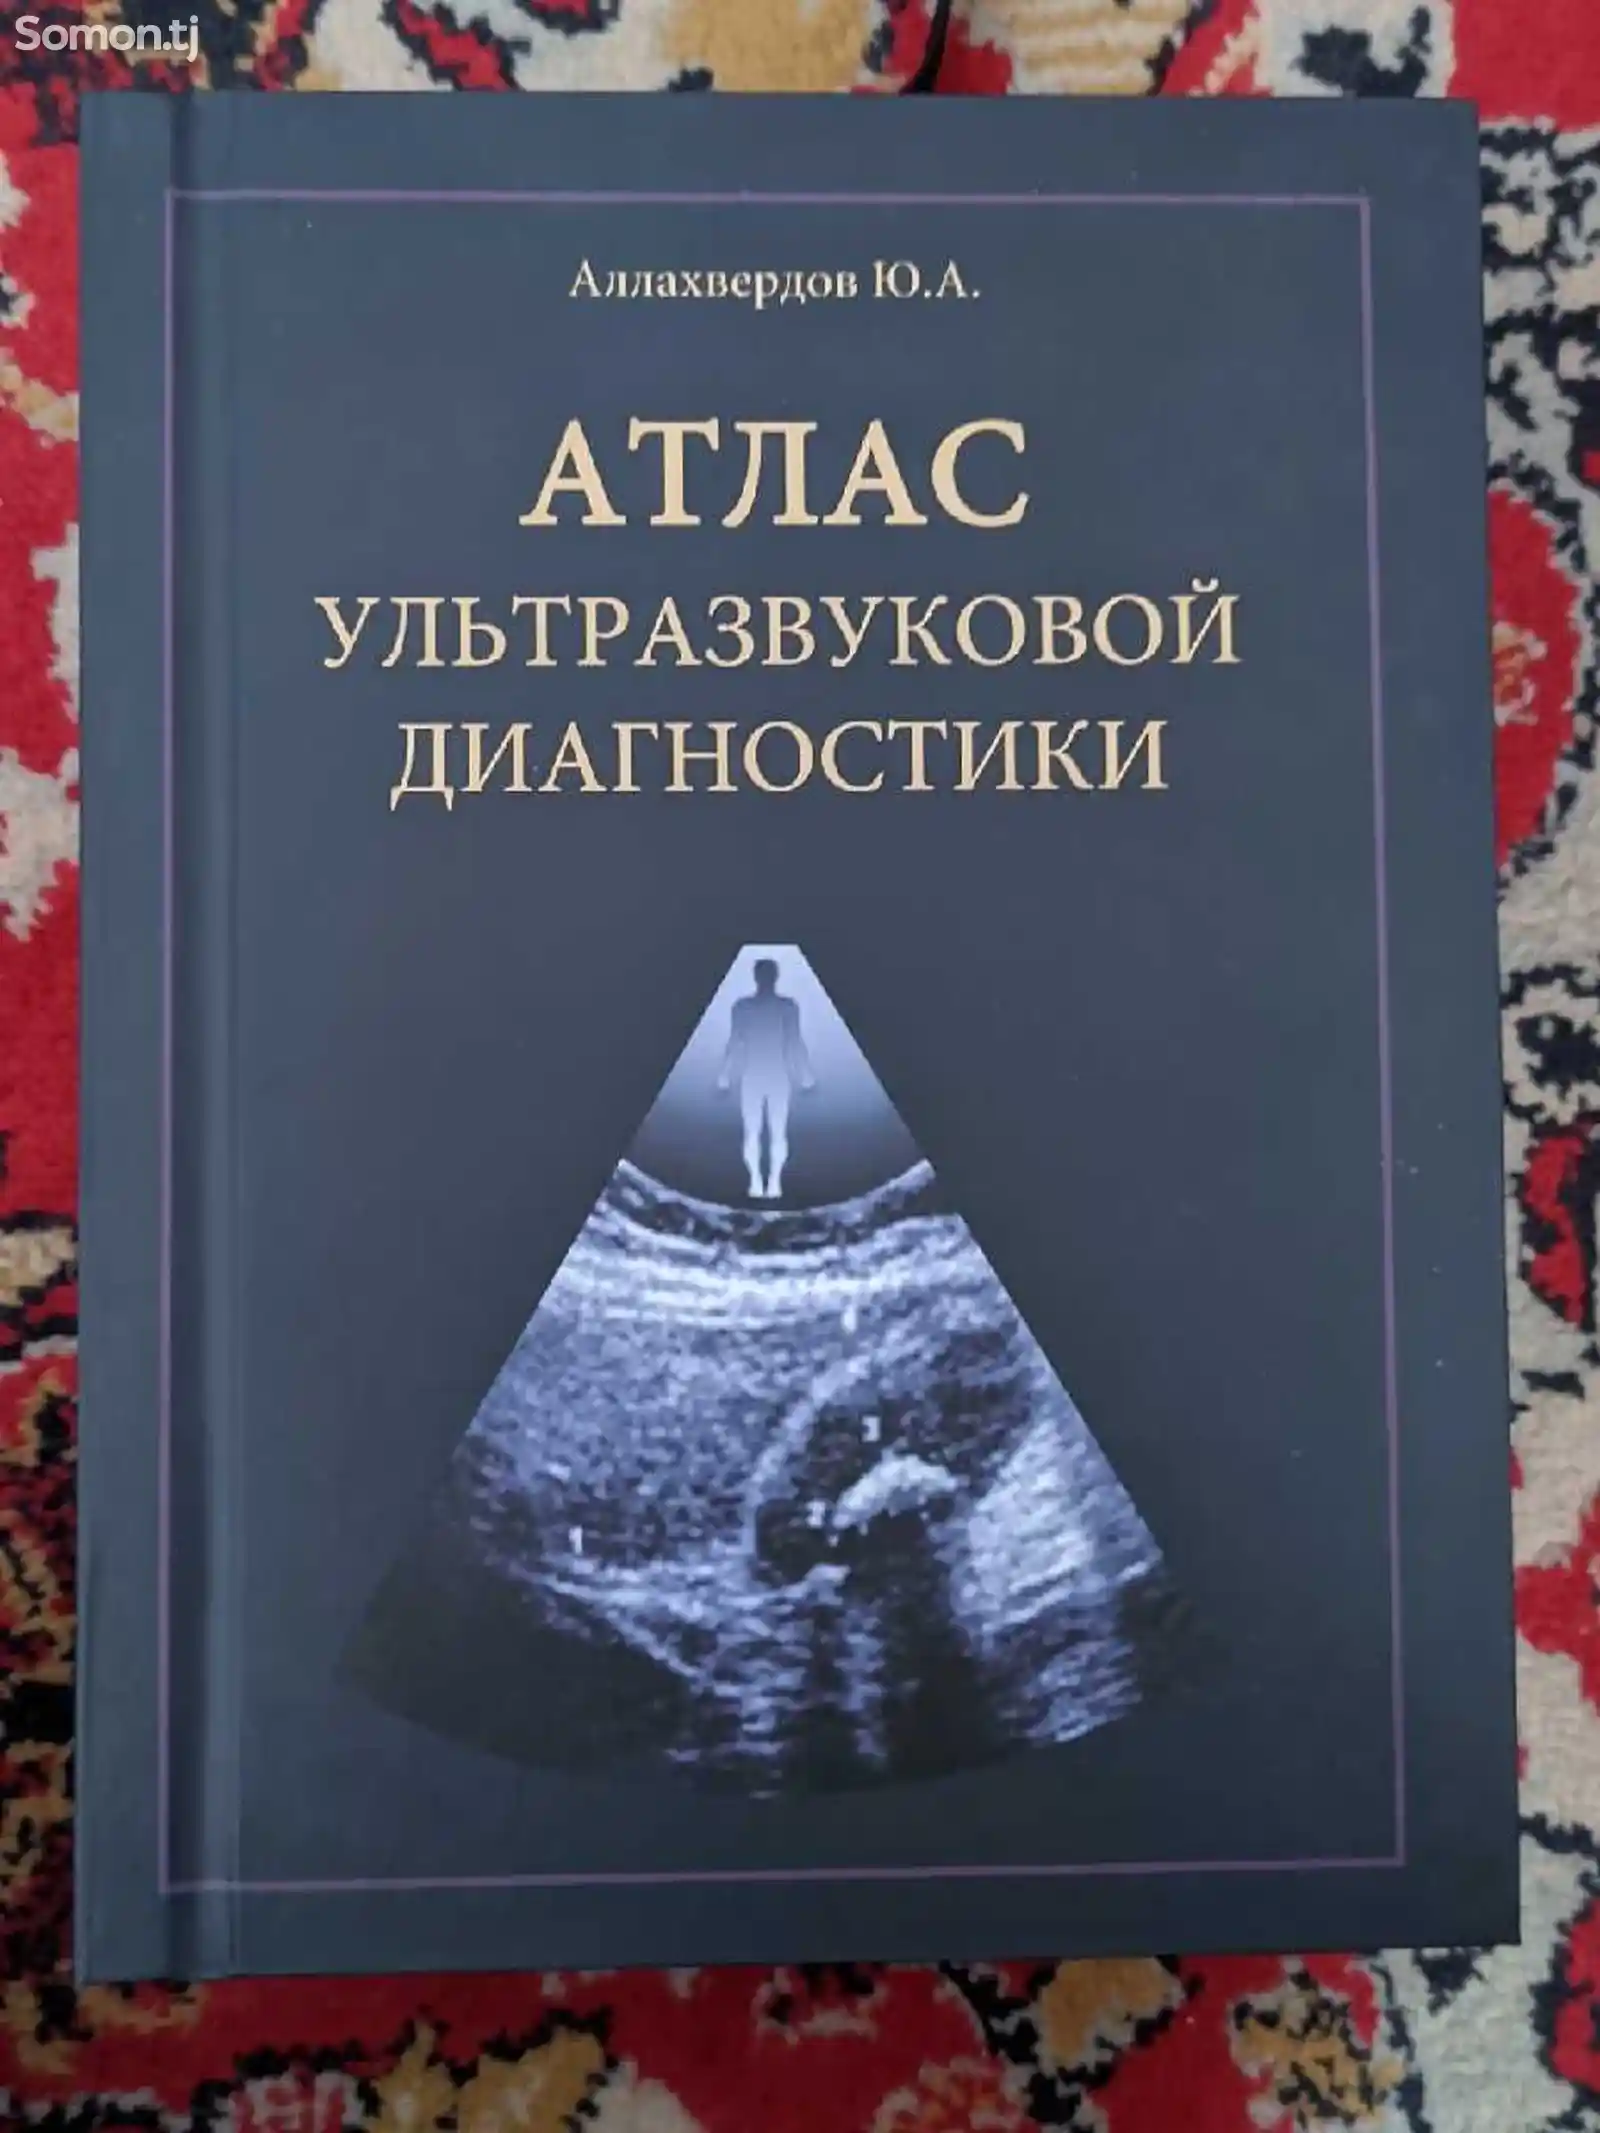 Книга Атлас ультразвуковой диагностики-1